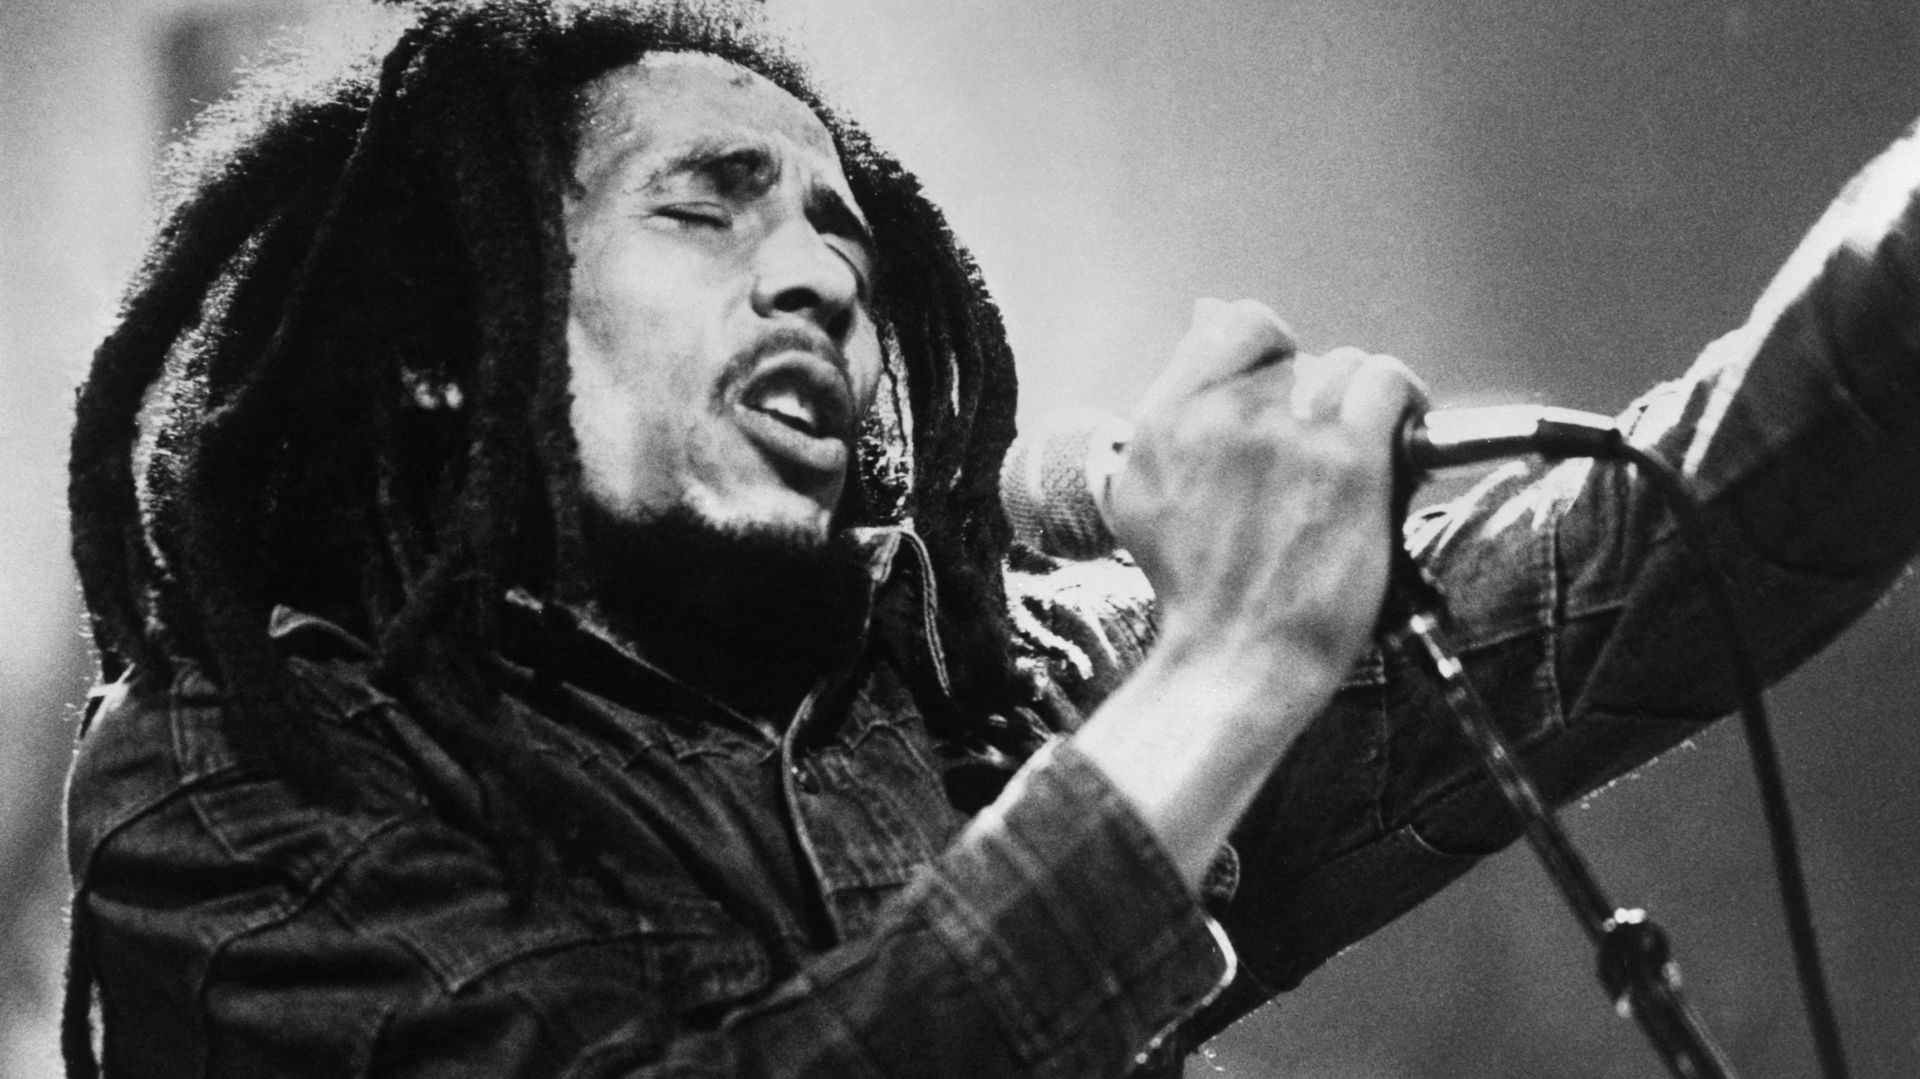 La famille de Bob Marley va sortir une reprise de "One Love" pour récolter des fonds